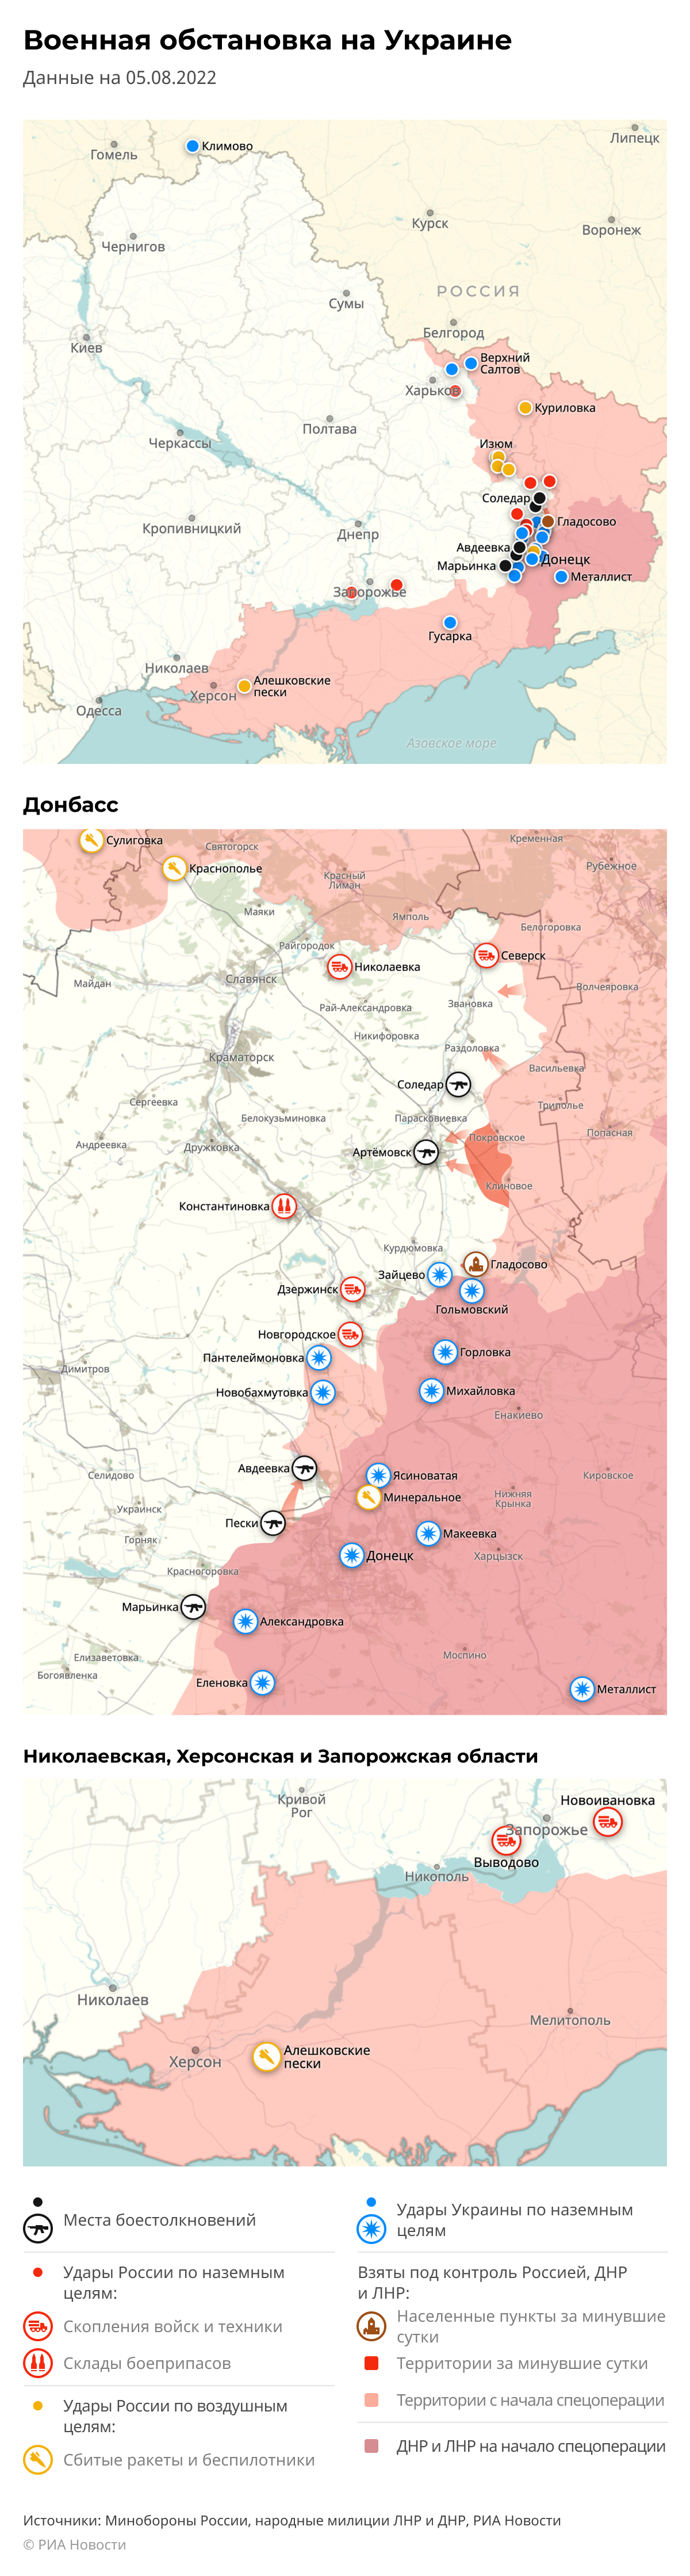 Карта спецоперации Вооруженных сил России на Украине на 05.08.2022